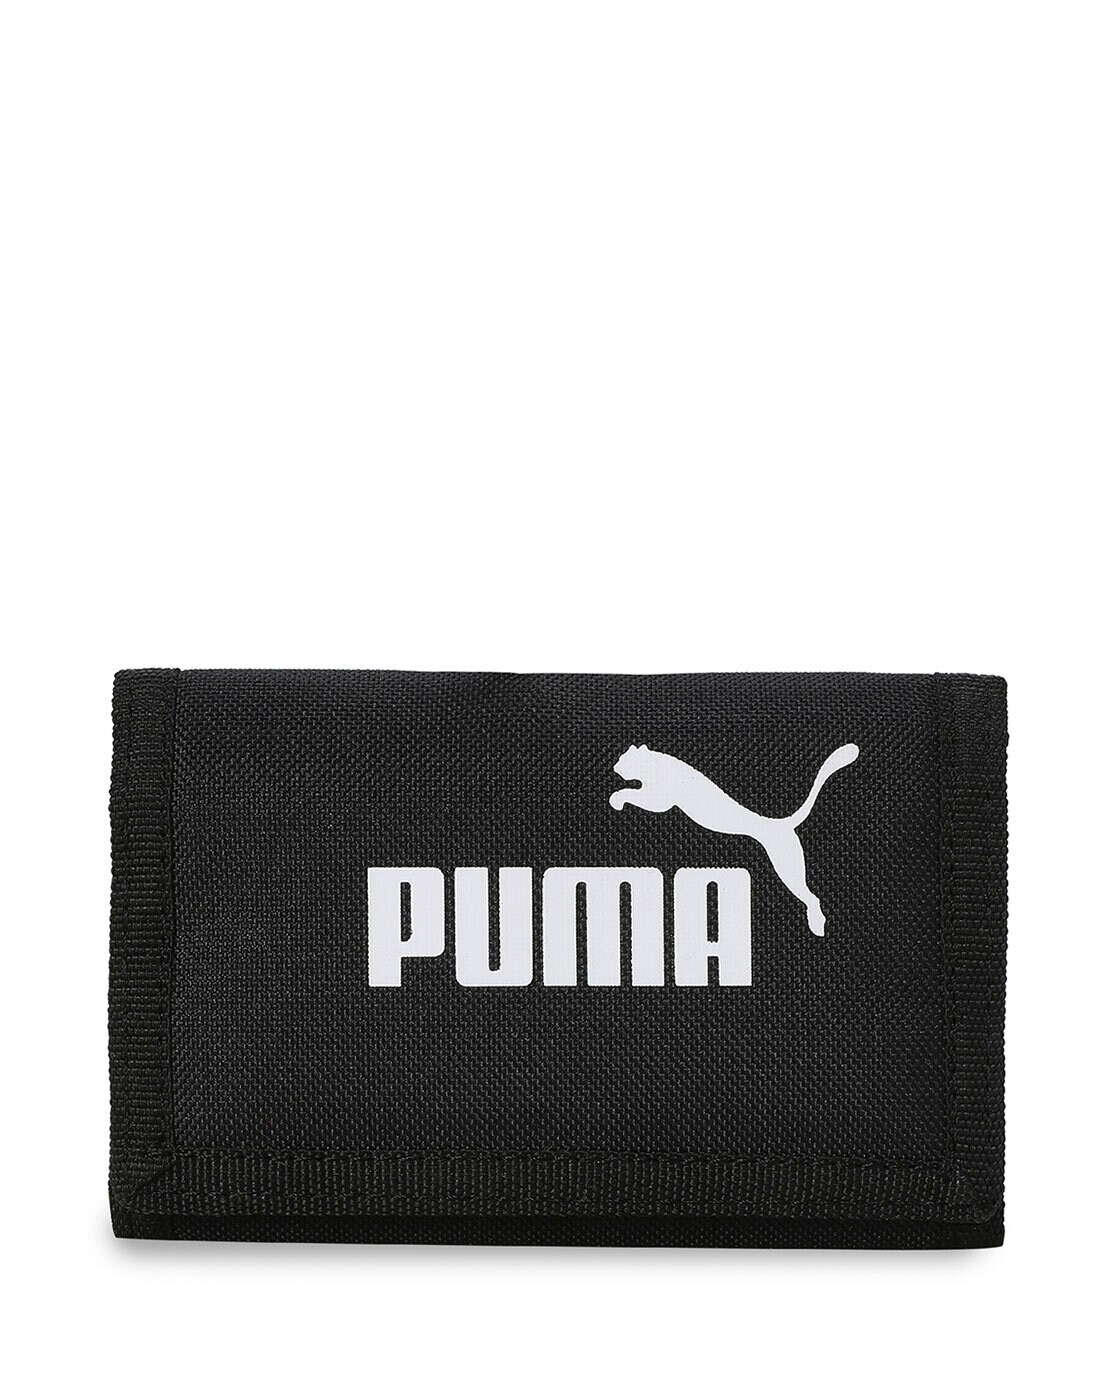 Buy Puma Classic Mens Wallet Online